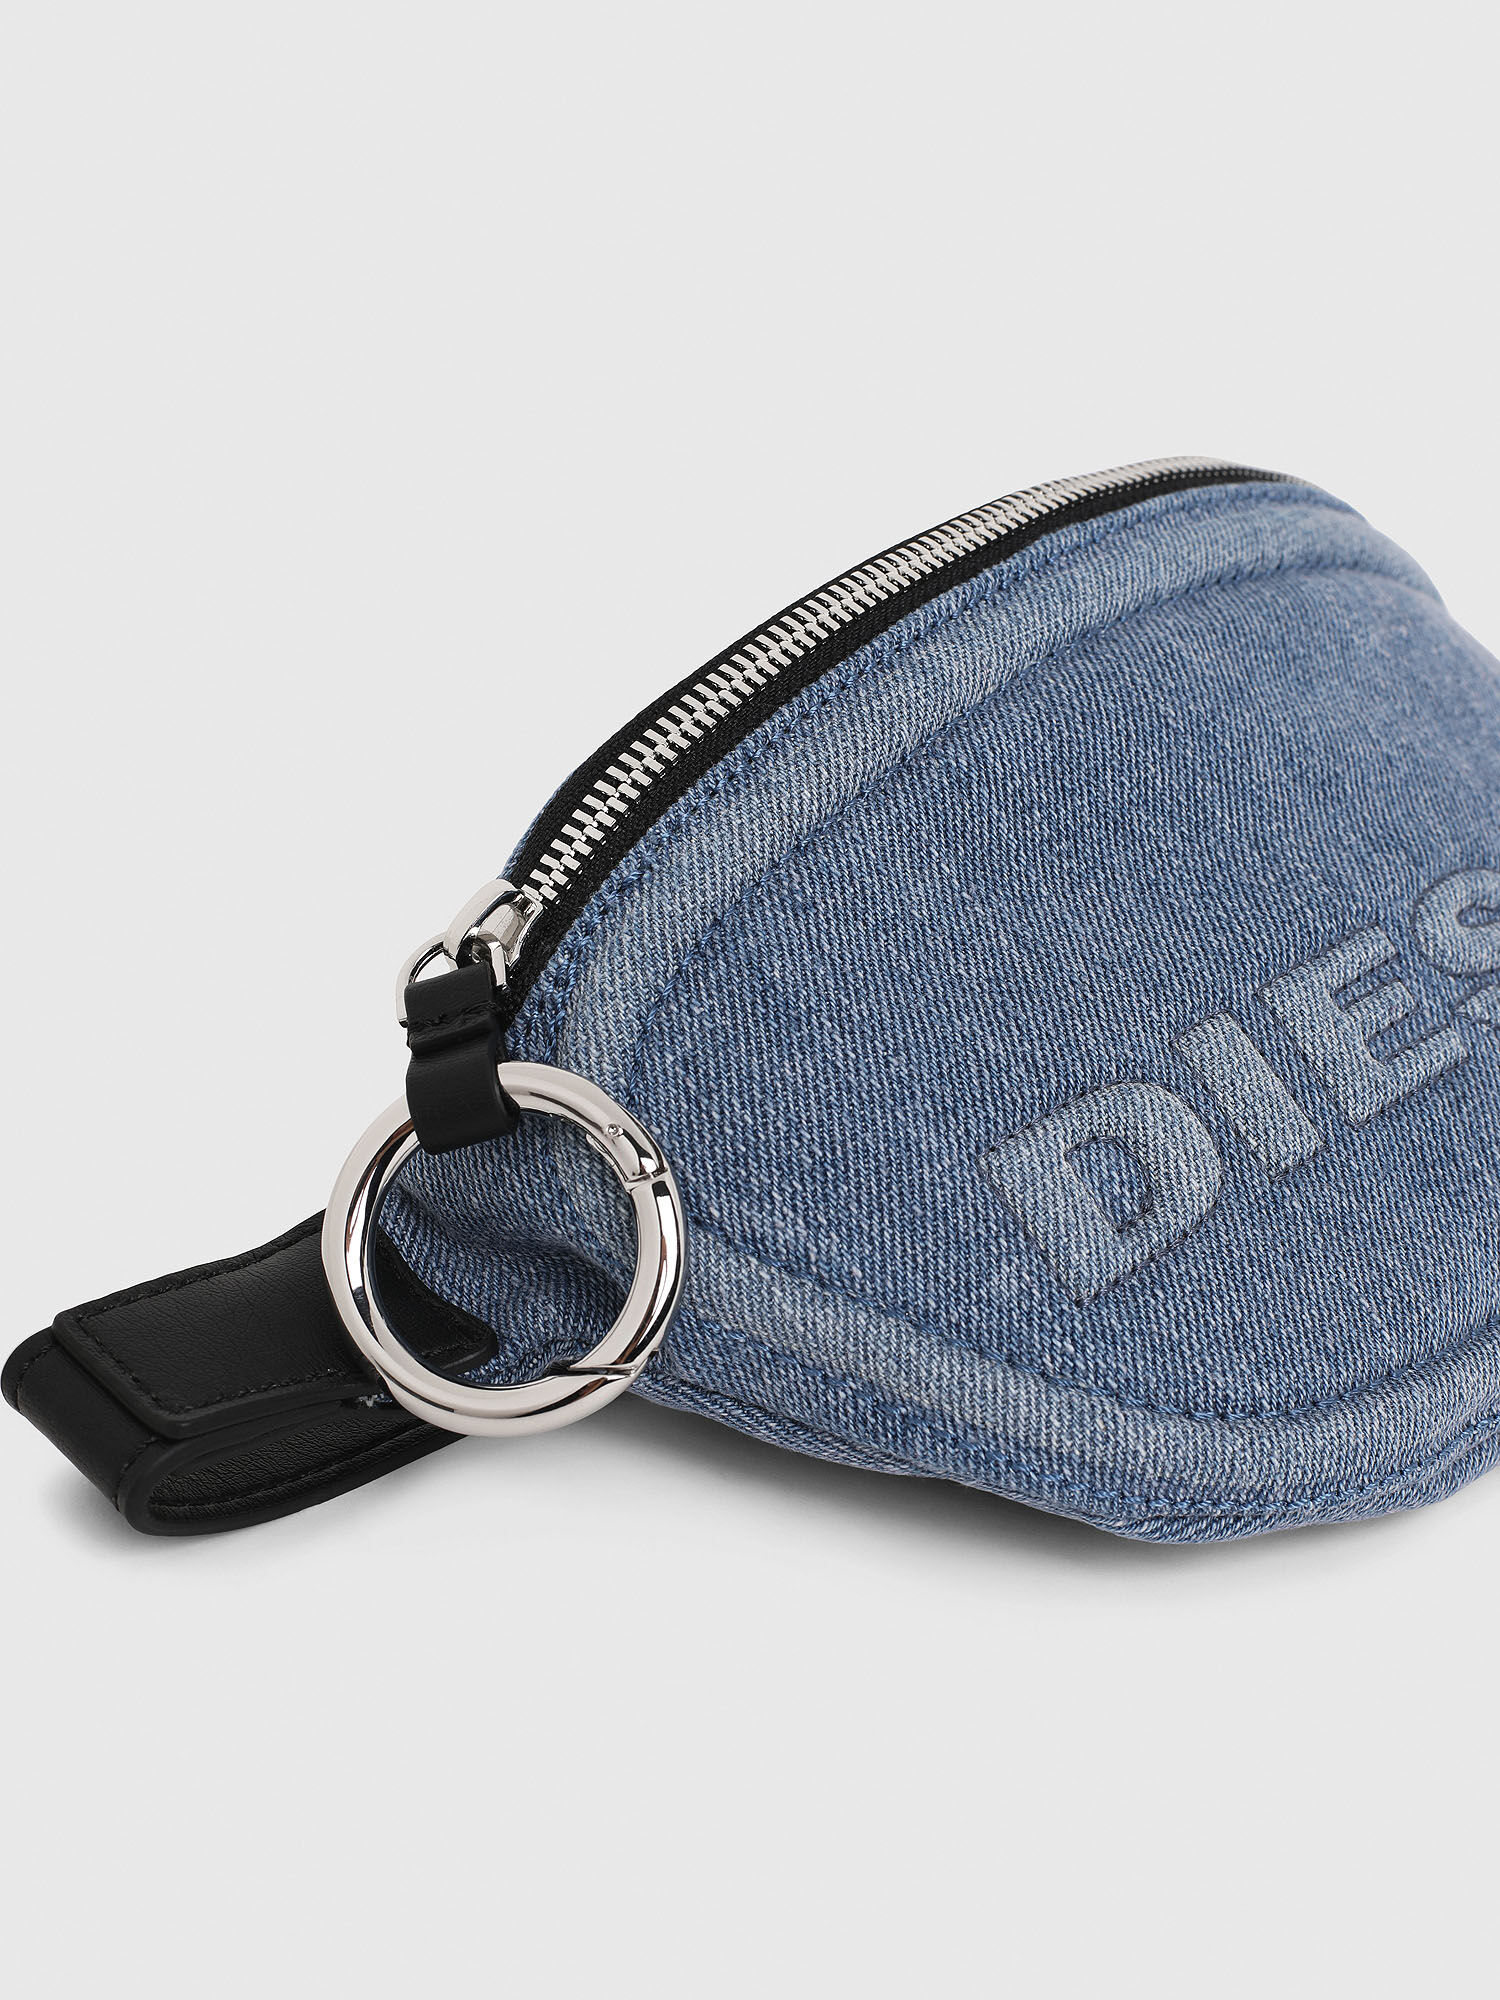 Diesel - ADRIA,  - Image 2